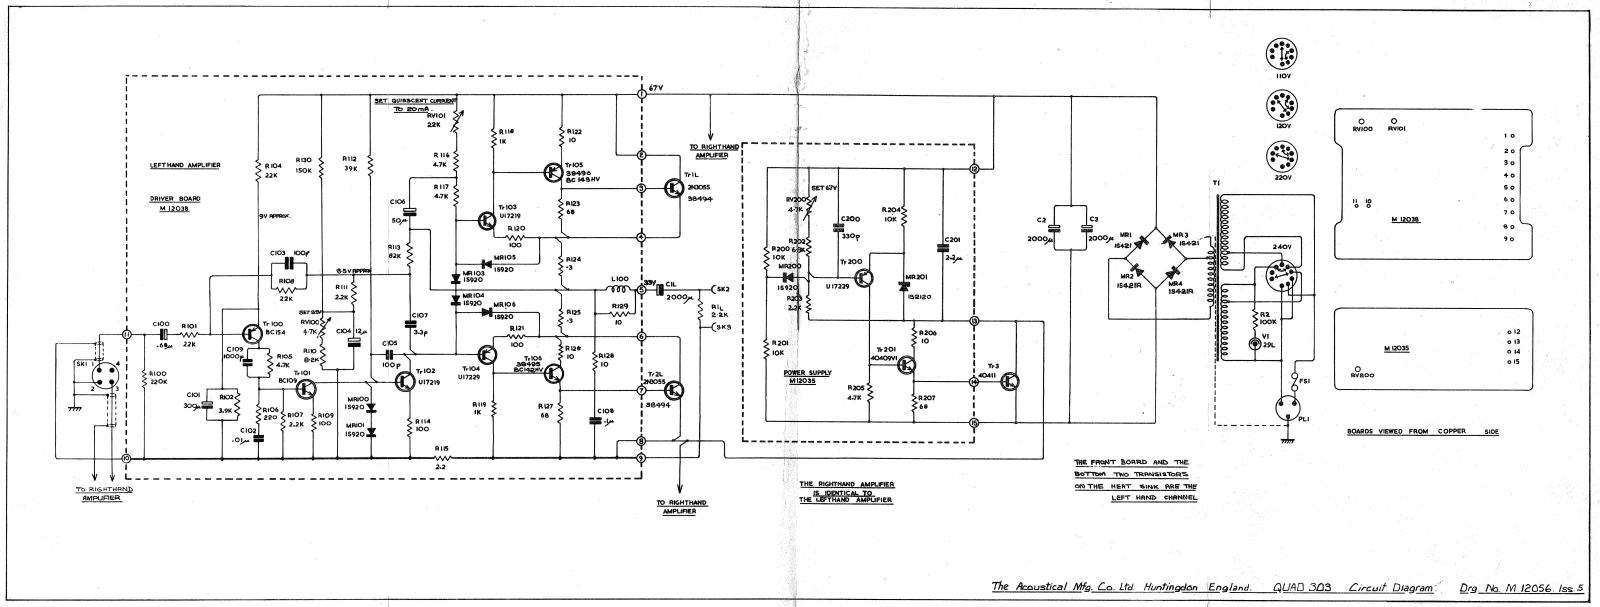 Quad 303 schematic